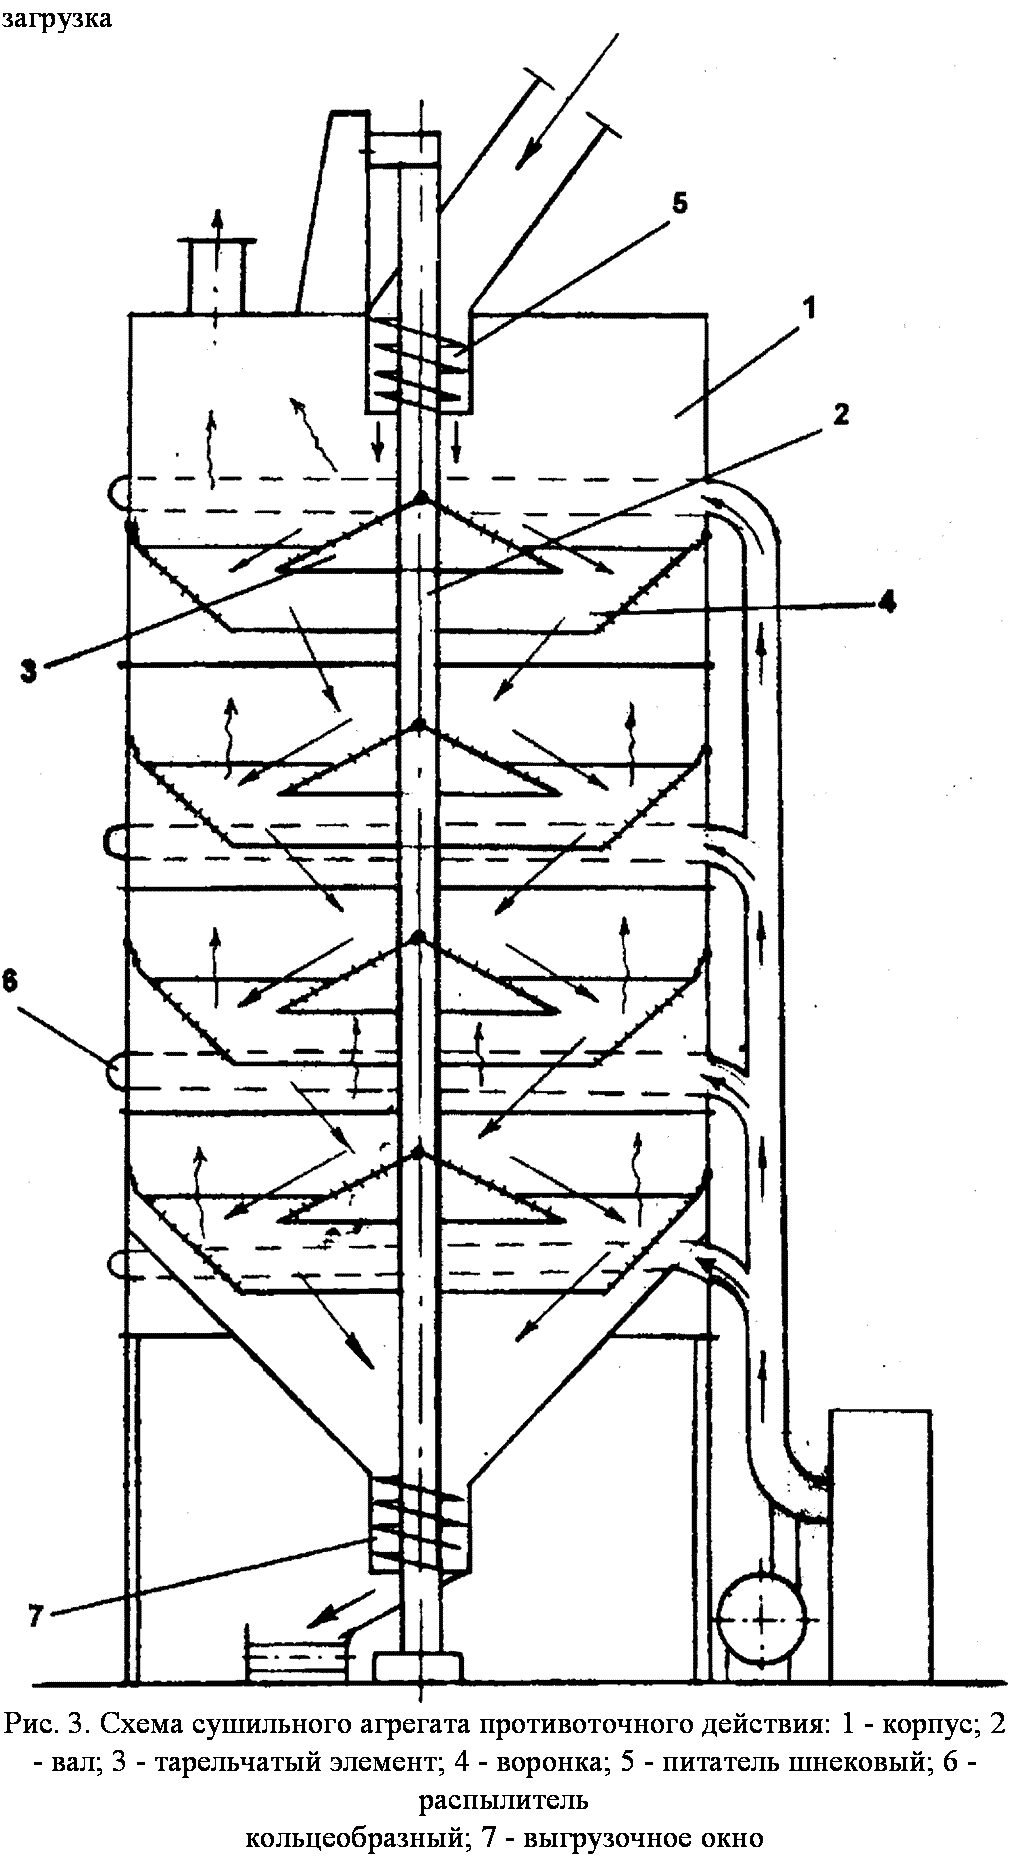 подпись: загрузка
 
рис. 3. схема сушильного агрегата противоточного действия: 1 - корпус; 2 - вал; 3 - тарельчатый элемент; 4 - воронка; 5 - питатель шнековый; 6 - распылитель
кольцеобразный; 7 - выгрузочное окно
